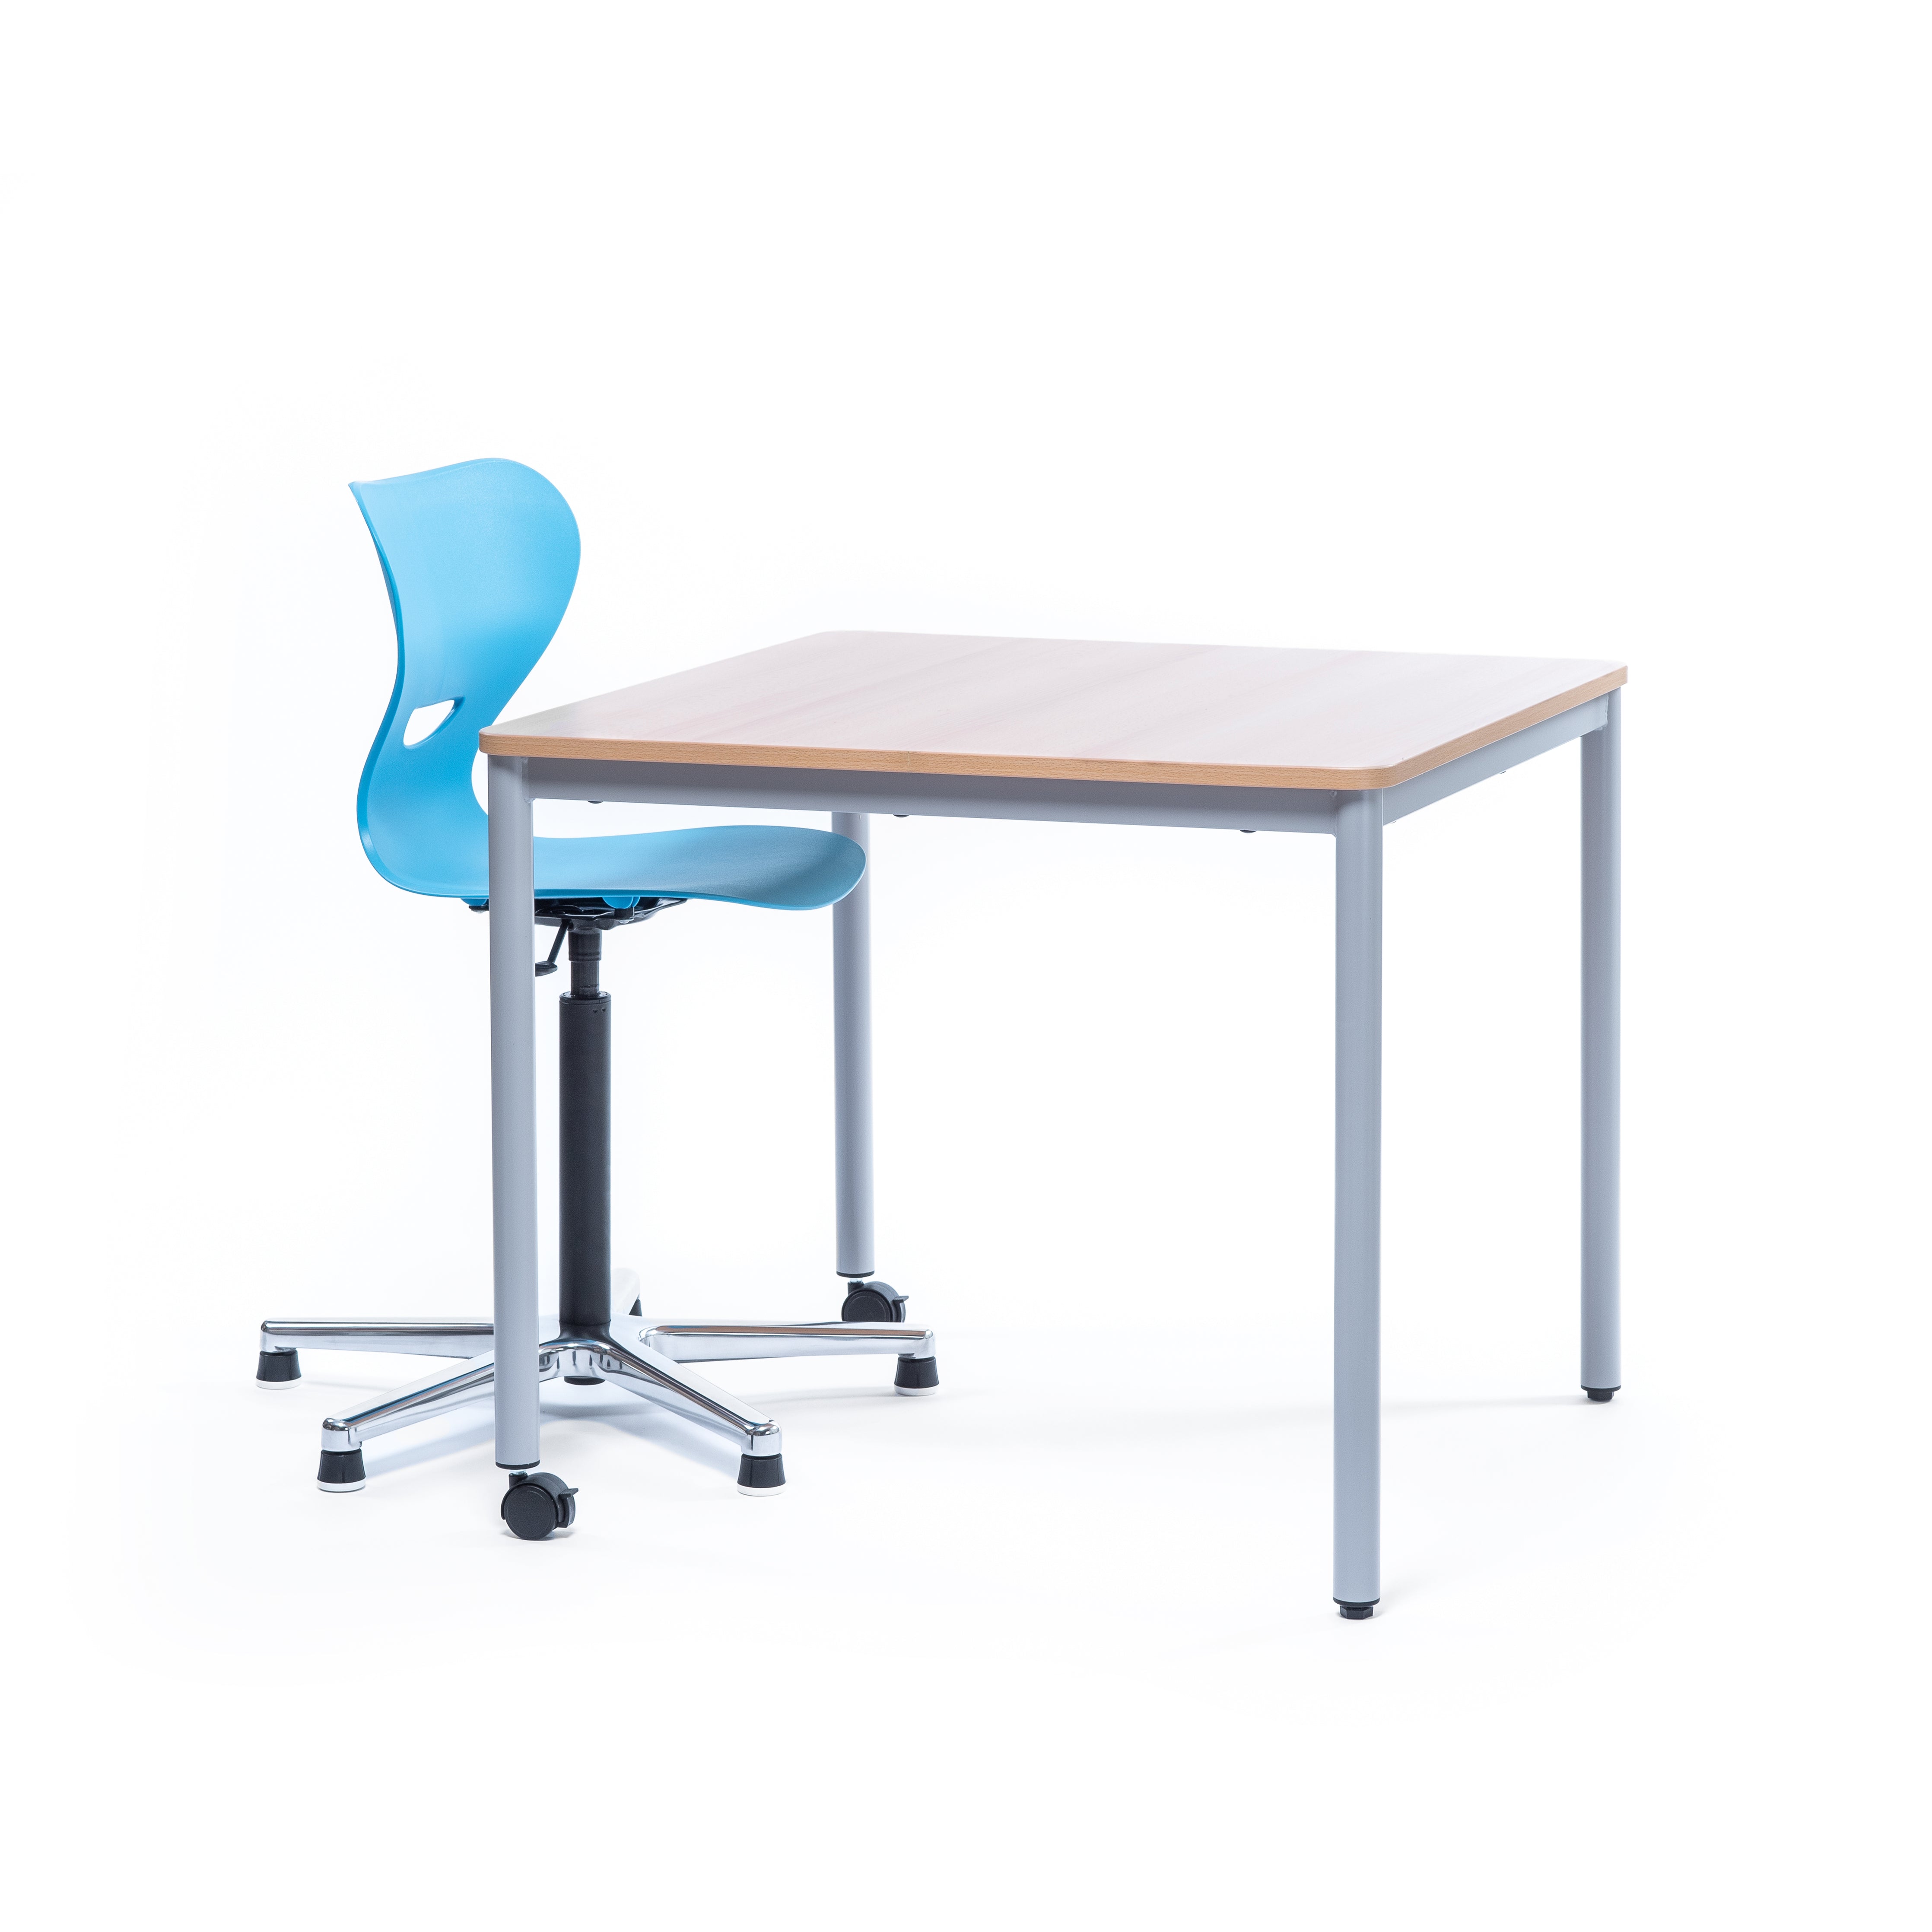 Schulstuhl aus Kunststoff mit passendem Schülertisch quadratisch aus Holz